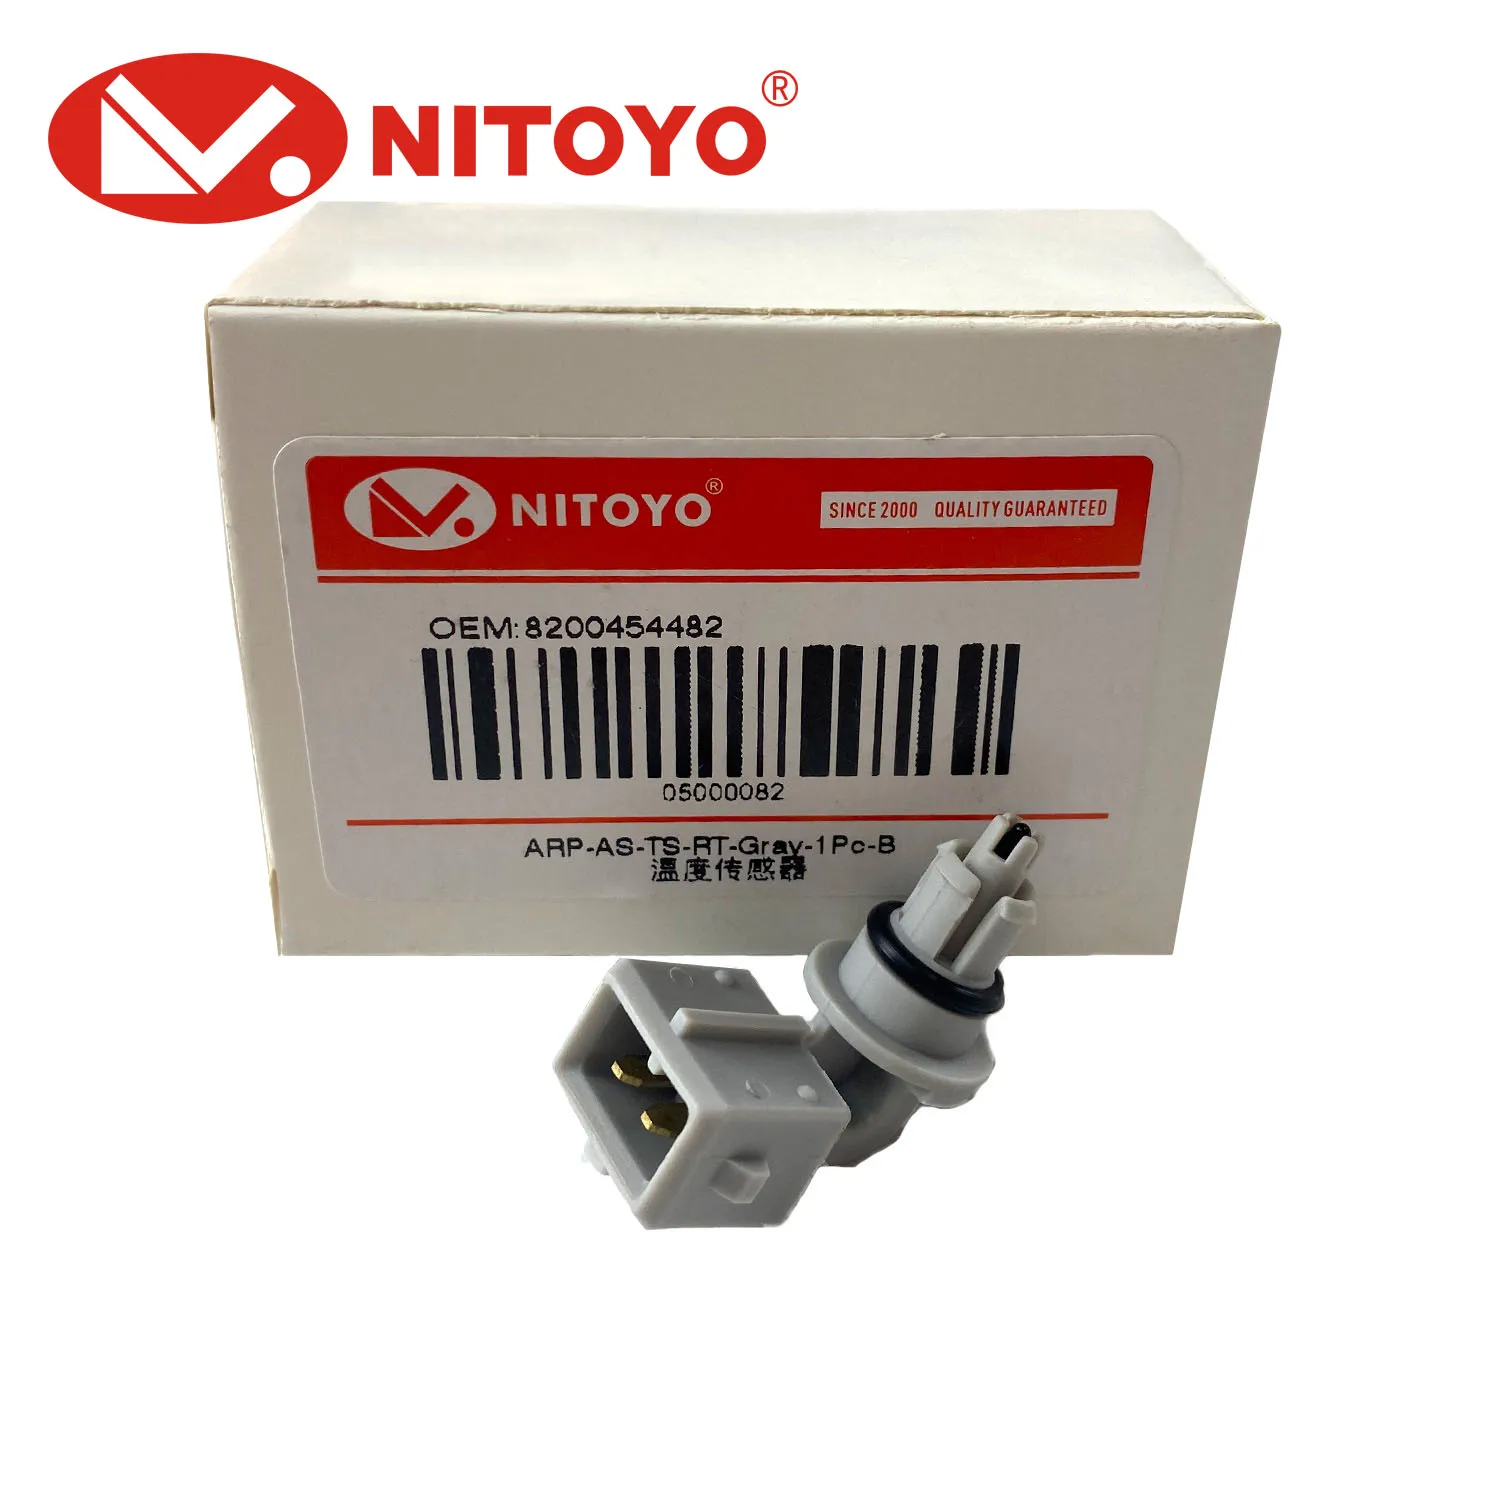 NITOYO-Sensor de temperatura de admisión de aire, accesorio para Renault, Citroen, Peugeot, Fiat, Lancia, Nissan, Dacia, #8200454482